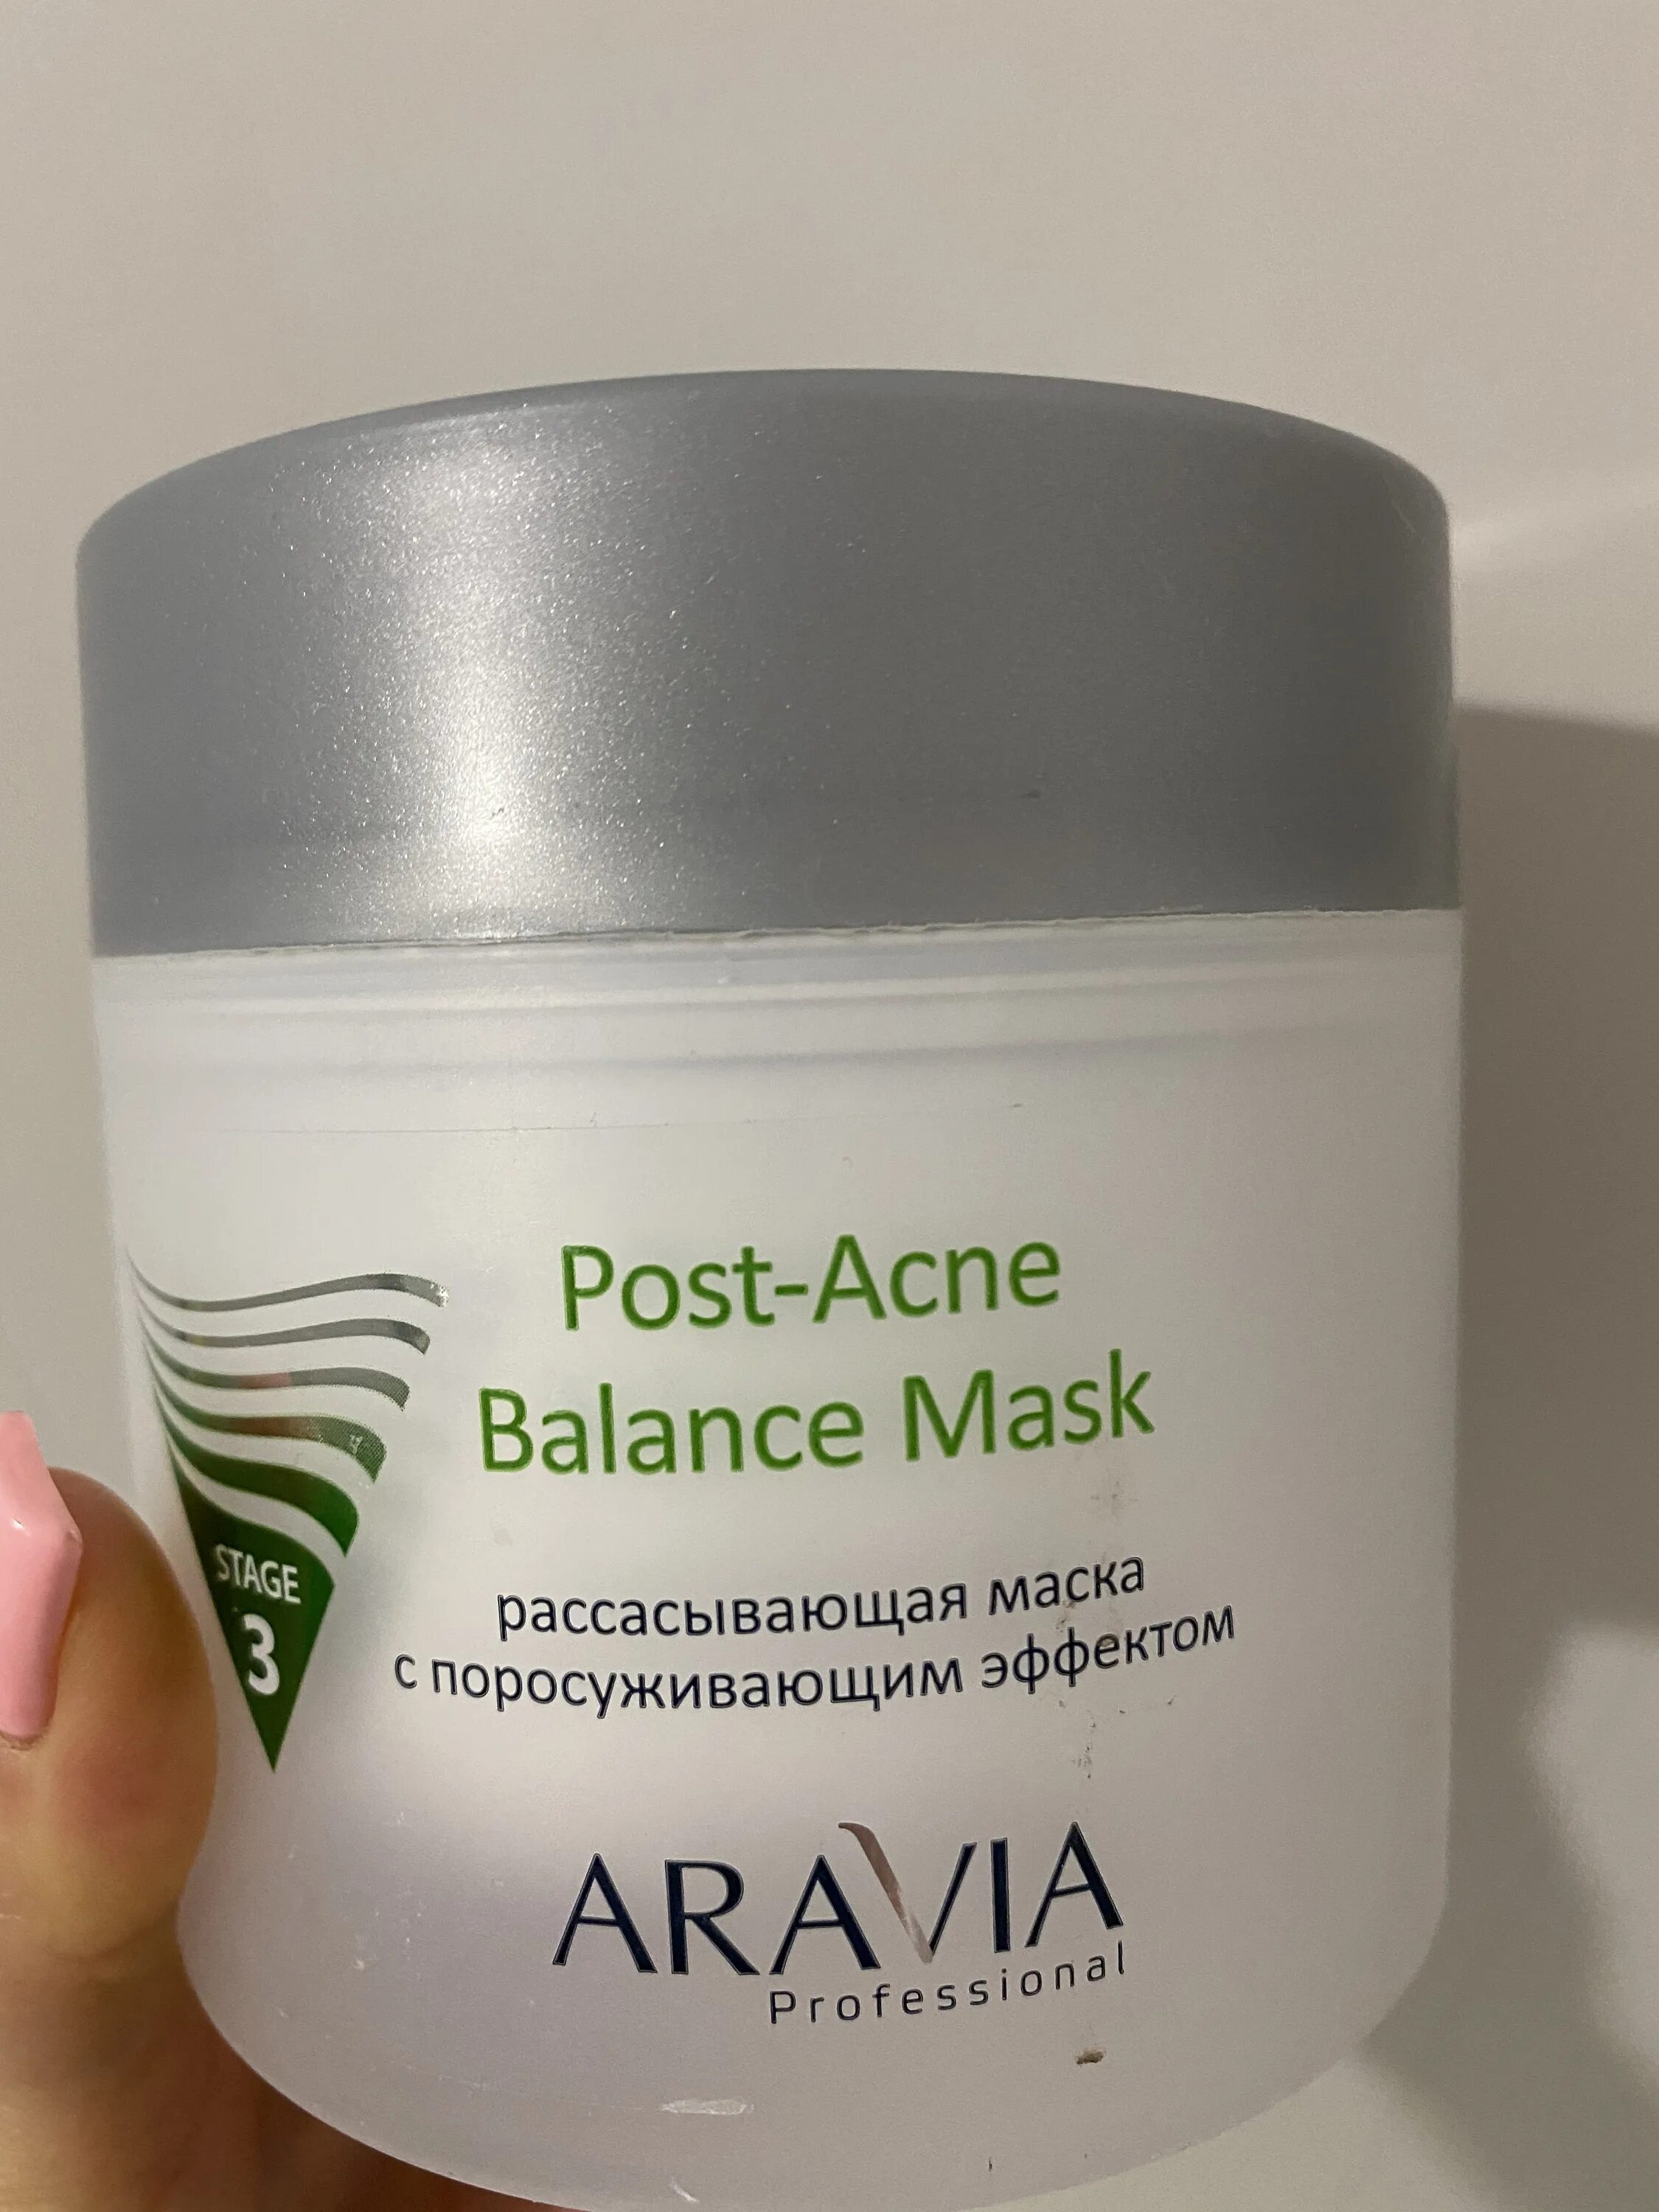 Поросуживающая маска отзывы. Aravia Post acne Balance Mask. Маска Aravia Anti-acne. Аравия рассасывающая маска с поросуживающим эффектом. Аравия от пигментации.